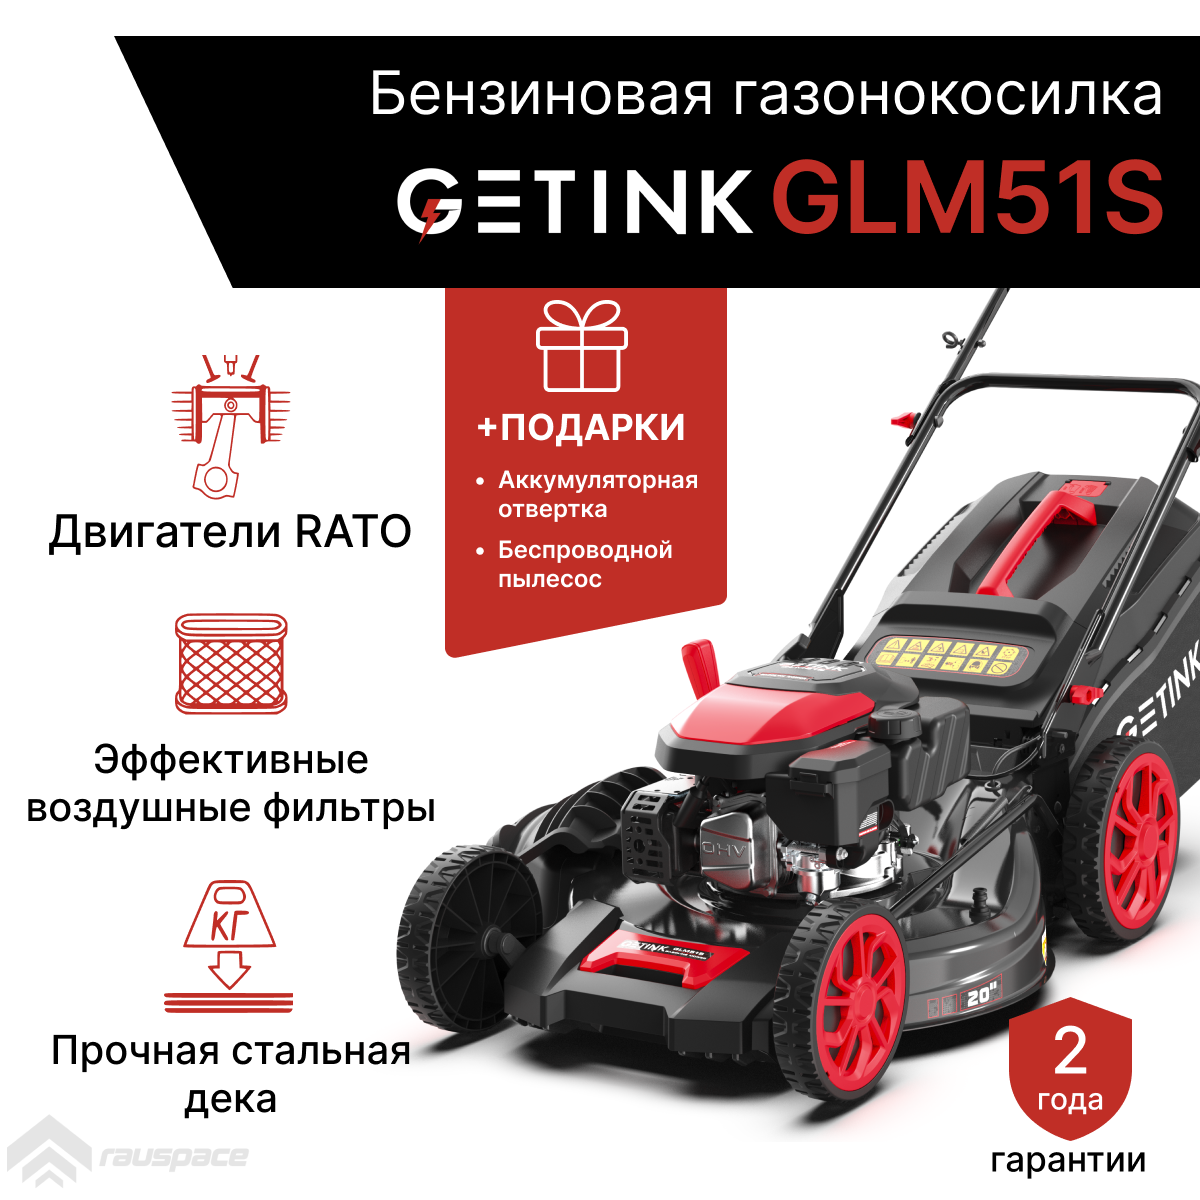 Бензиновая газонокосилка GETINK GLM51S + Пылесос автомобильный + Аккумуляторная отвертка